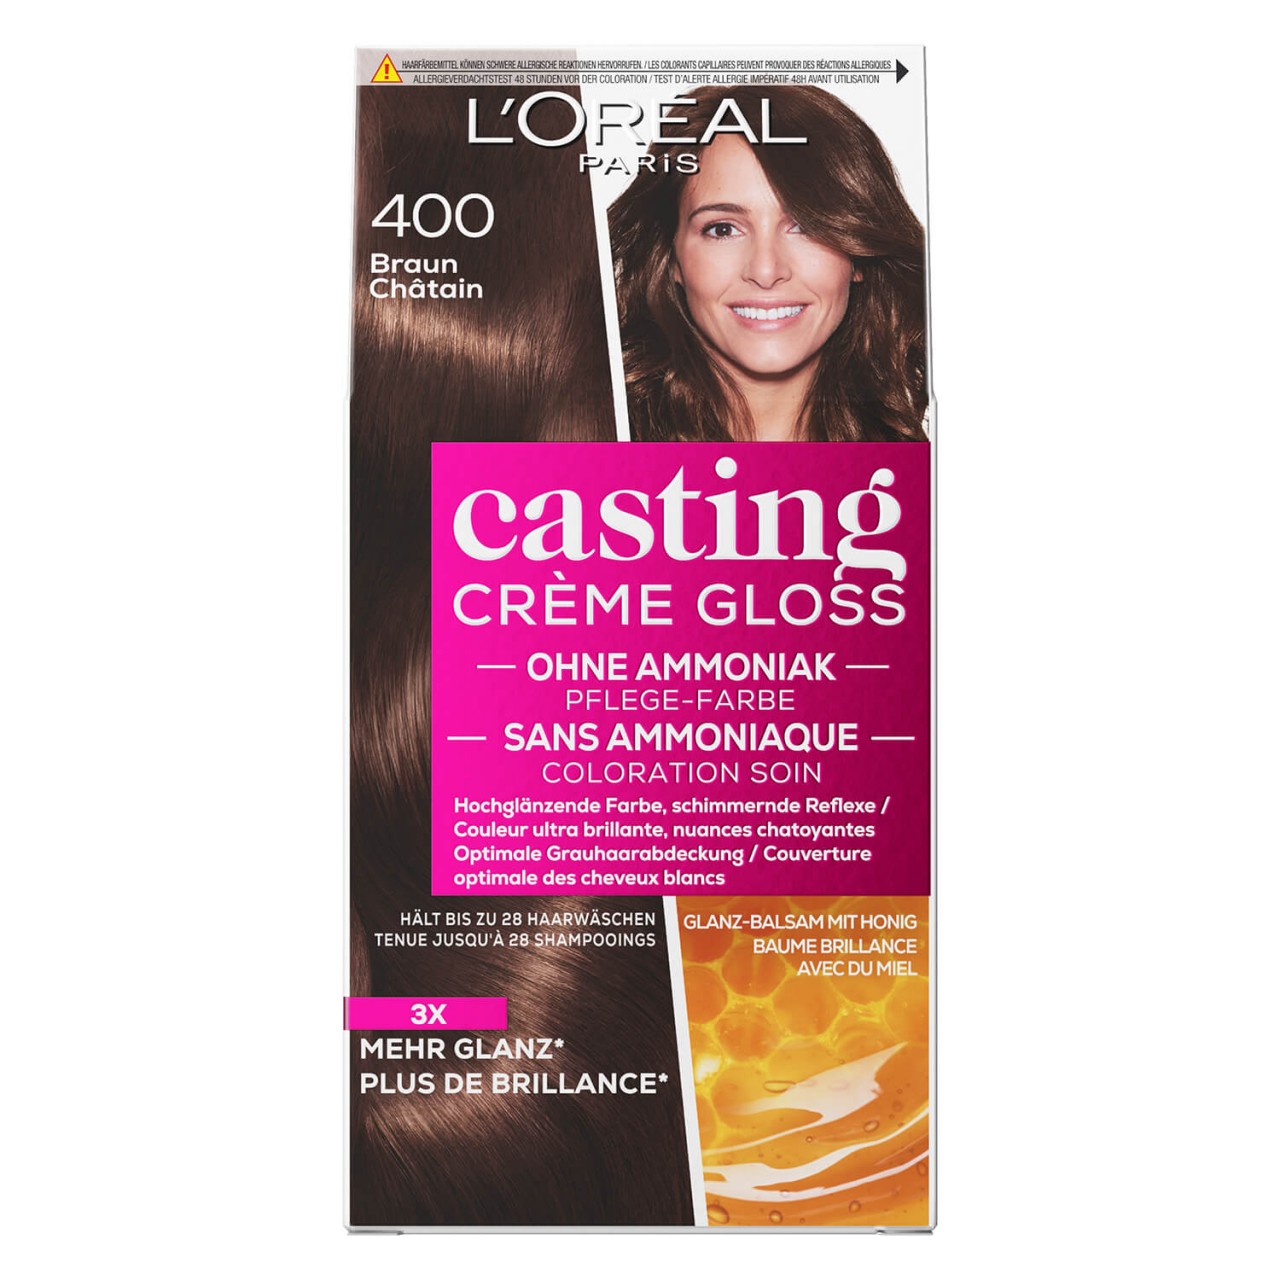 LOréal Casting - Crème Gloss 400 Braun von L'Oréal Paris